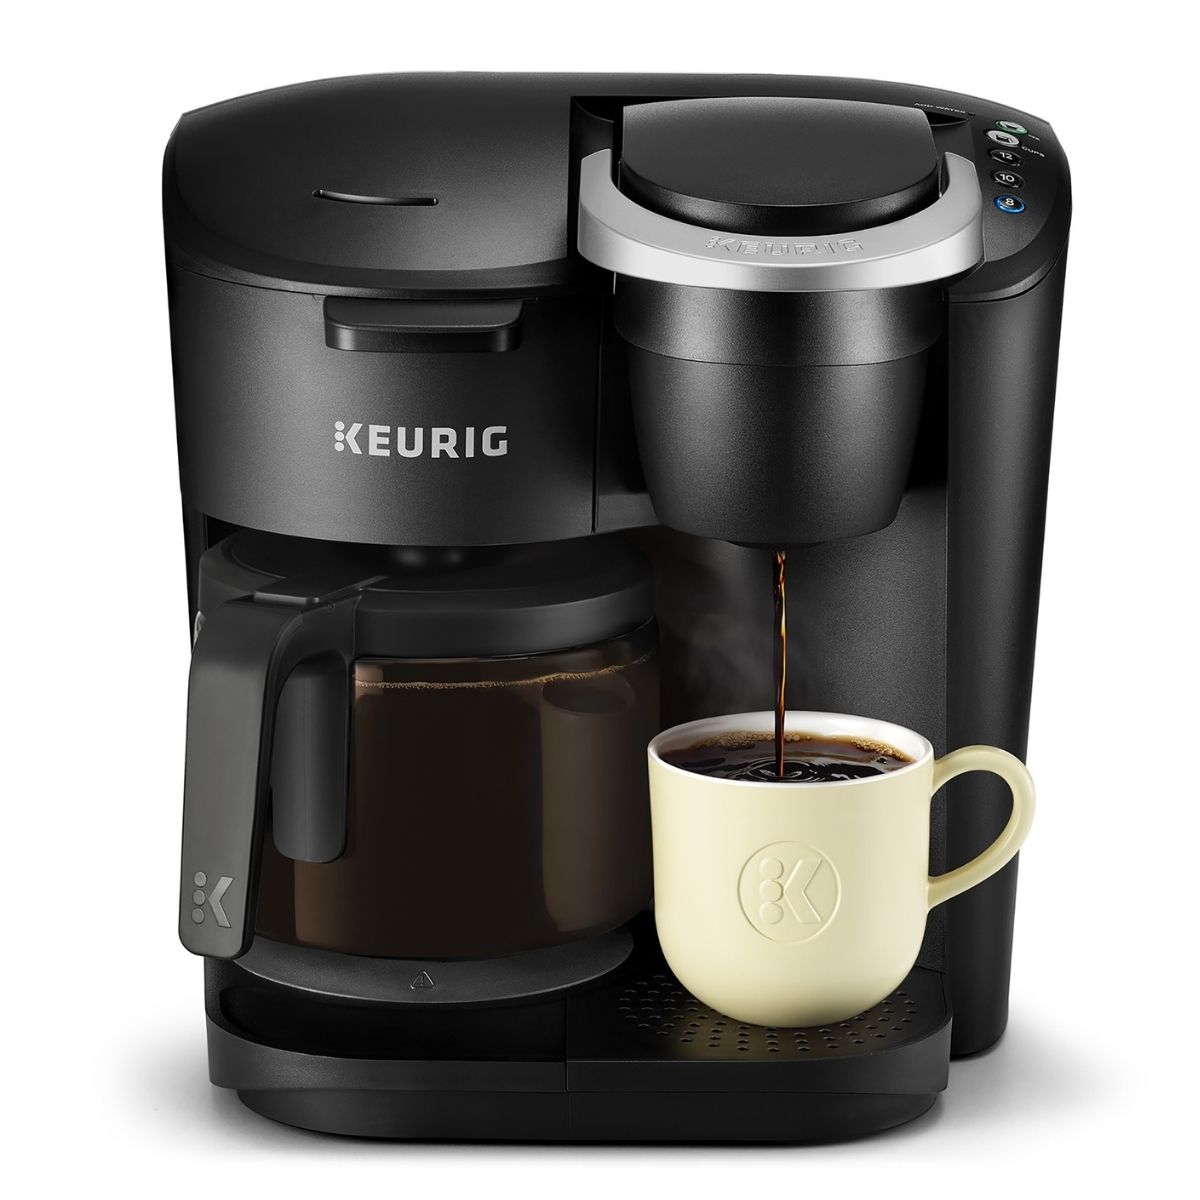 The Keurig Black Friday Option: Keurig K-Duo Essentials Coffee Maker